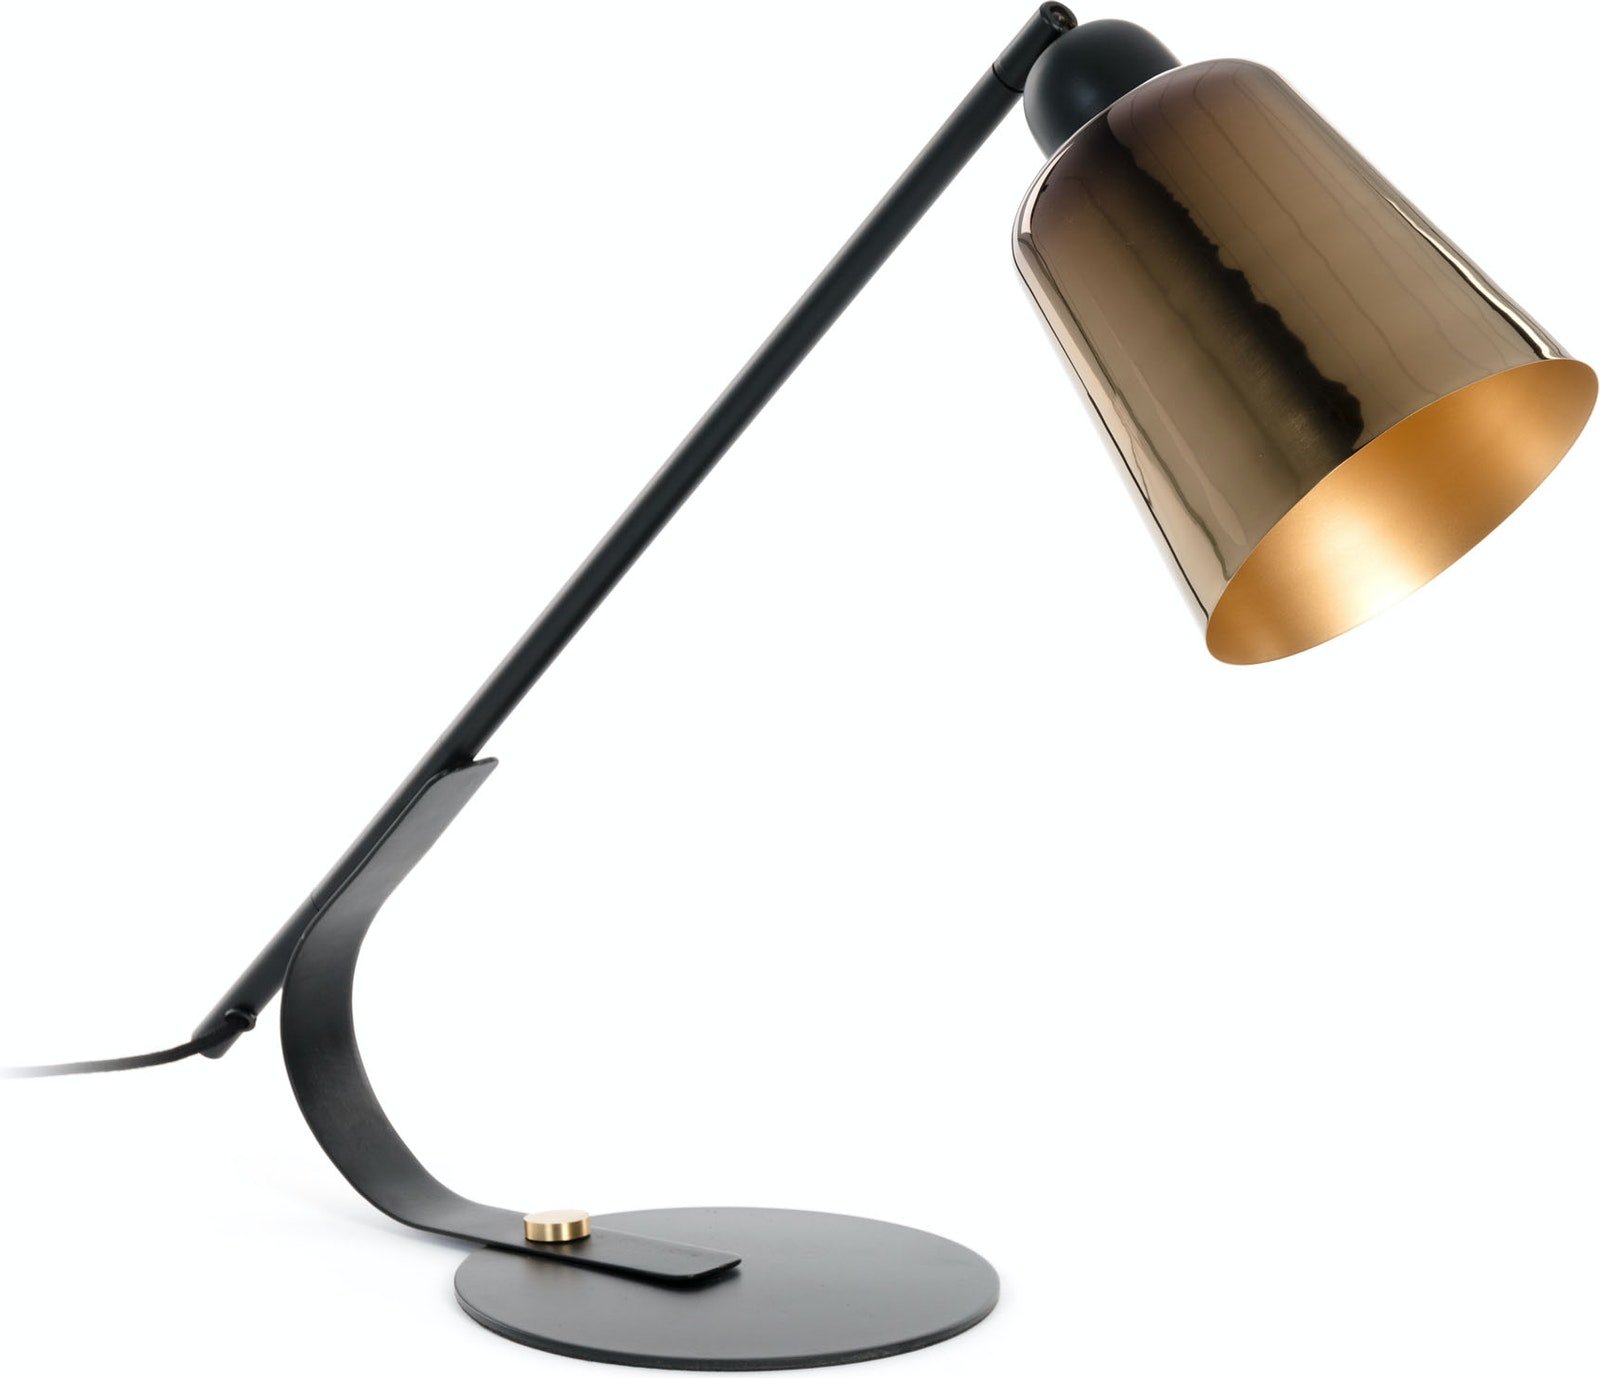 #1 på vores liste over retro lamper er Retro Lampe